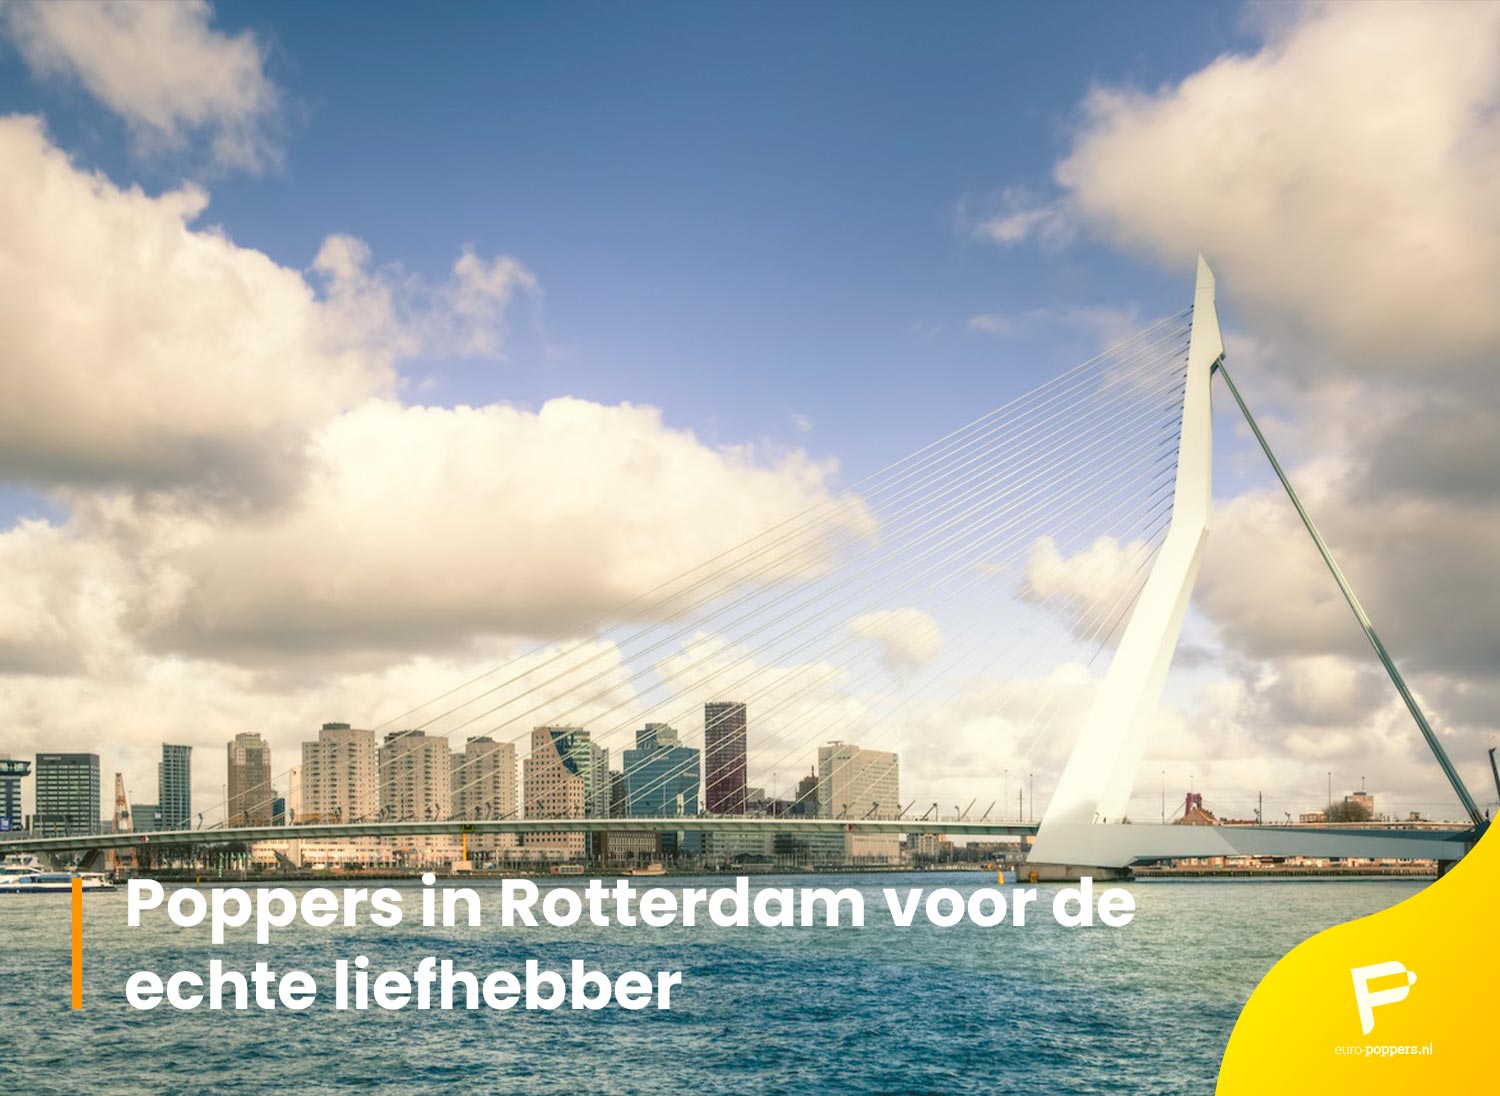 Je bekijkt nu Poppers in Rotterdam voor de echte liefhebber